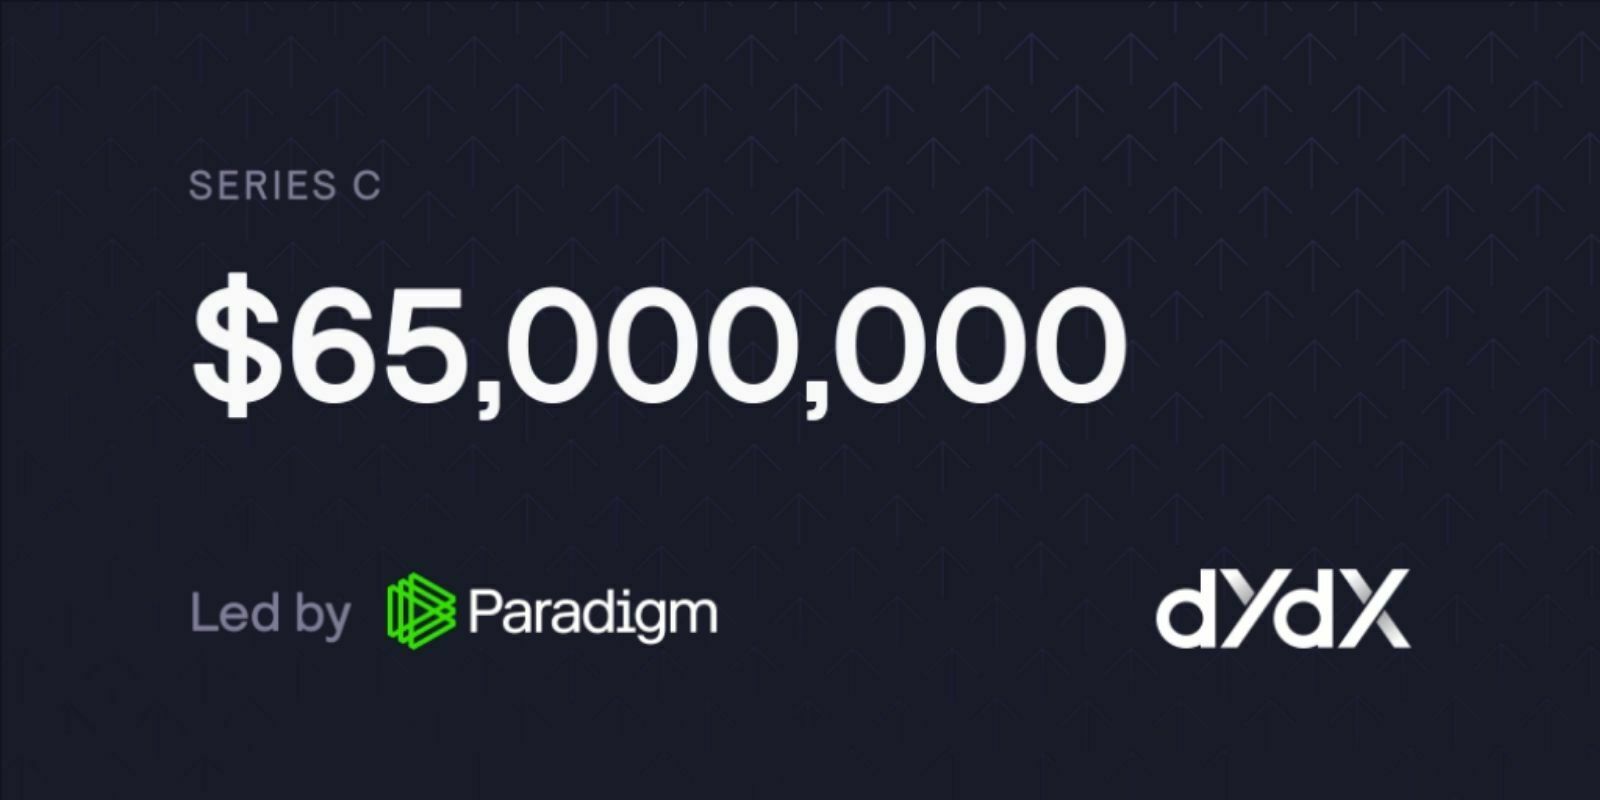 L’exchange décentralisé (DEX) dYdX lève 65M$ auprès de Paradigm